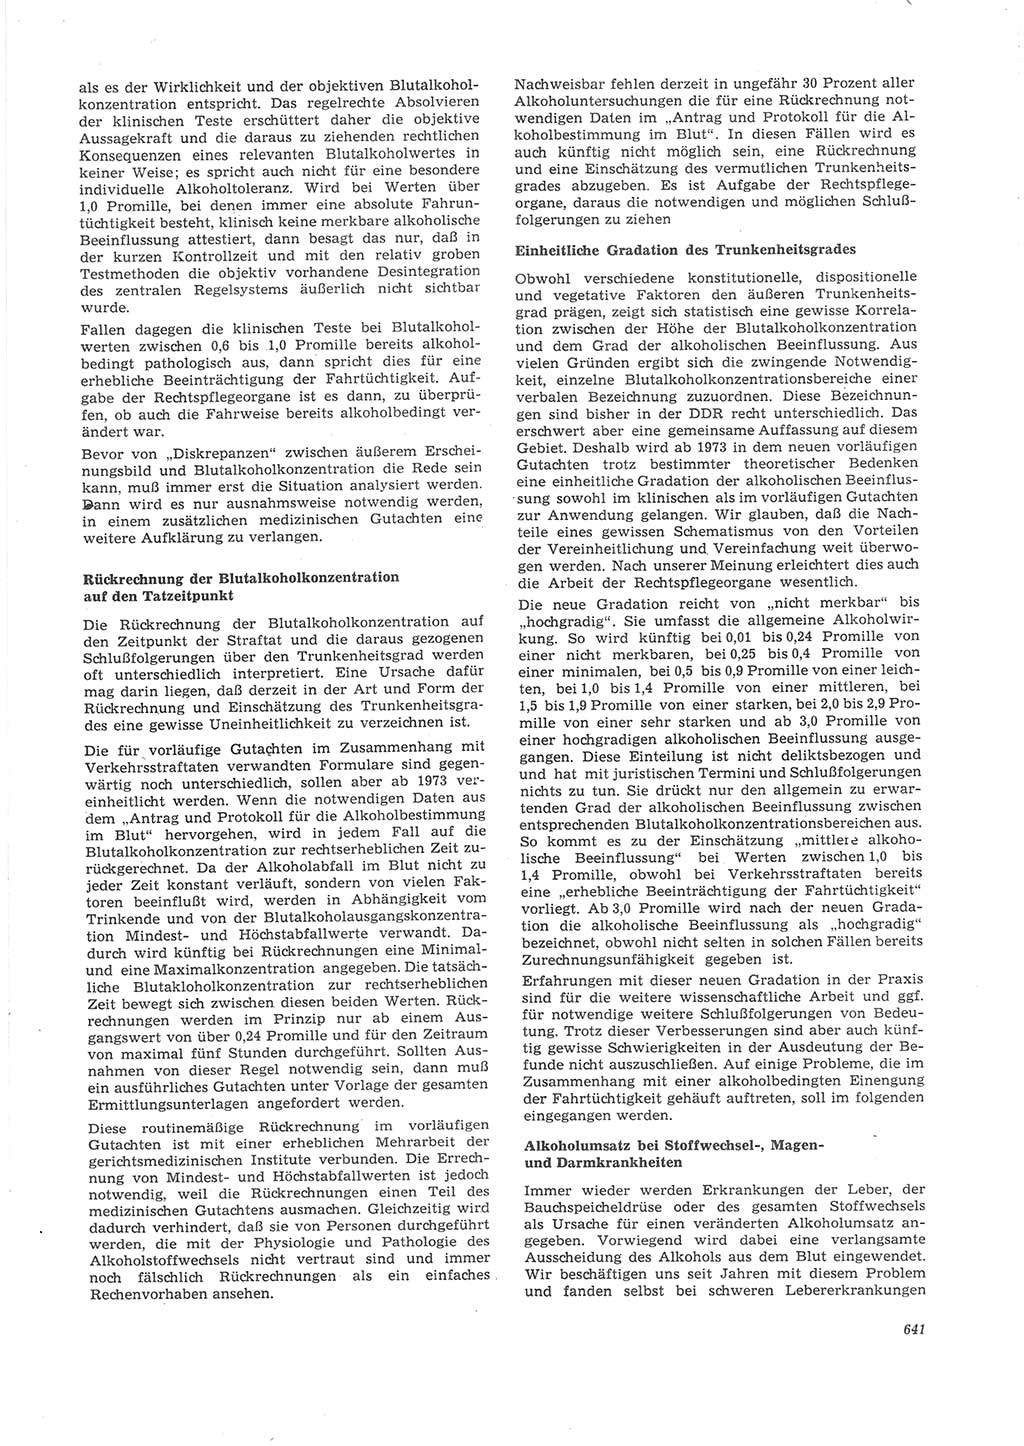 Neue Justiz (NJ), Zeitschrift für Recht und Rechtswissenschaft [Deutsche Demokratische Republik (DDR)], 26. Jahrgang 1972, Seite 641 (NJ DDR 1972, S. 641)